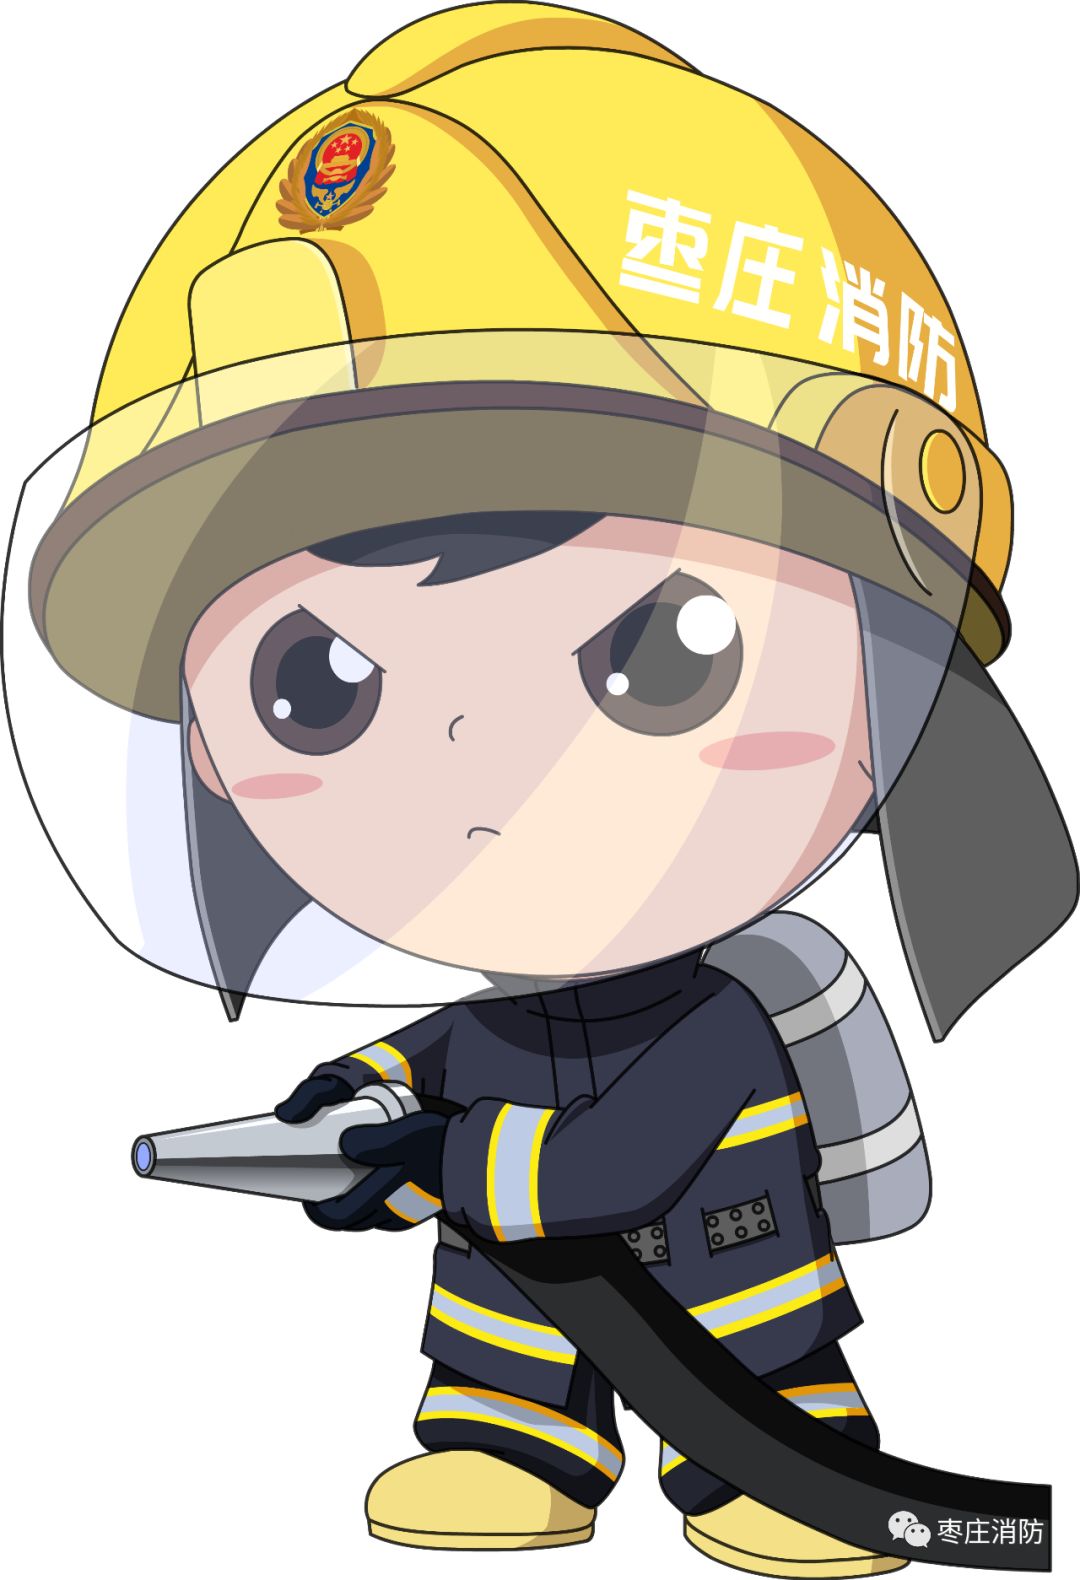 枣庄消防动漫形象今天正式上线啦